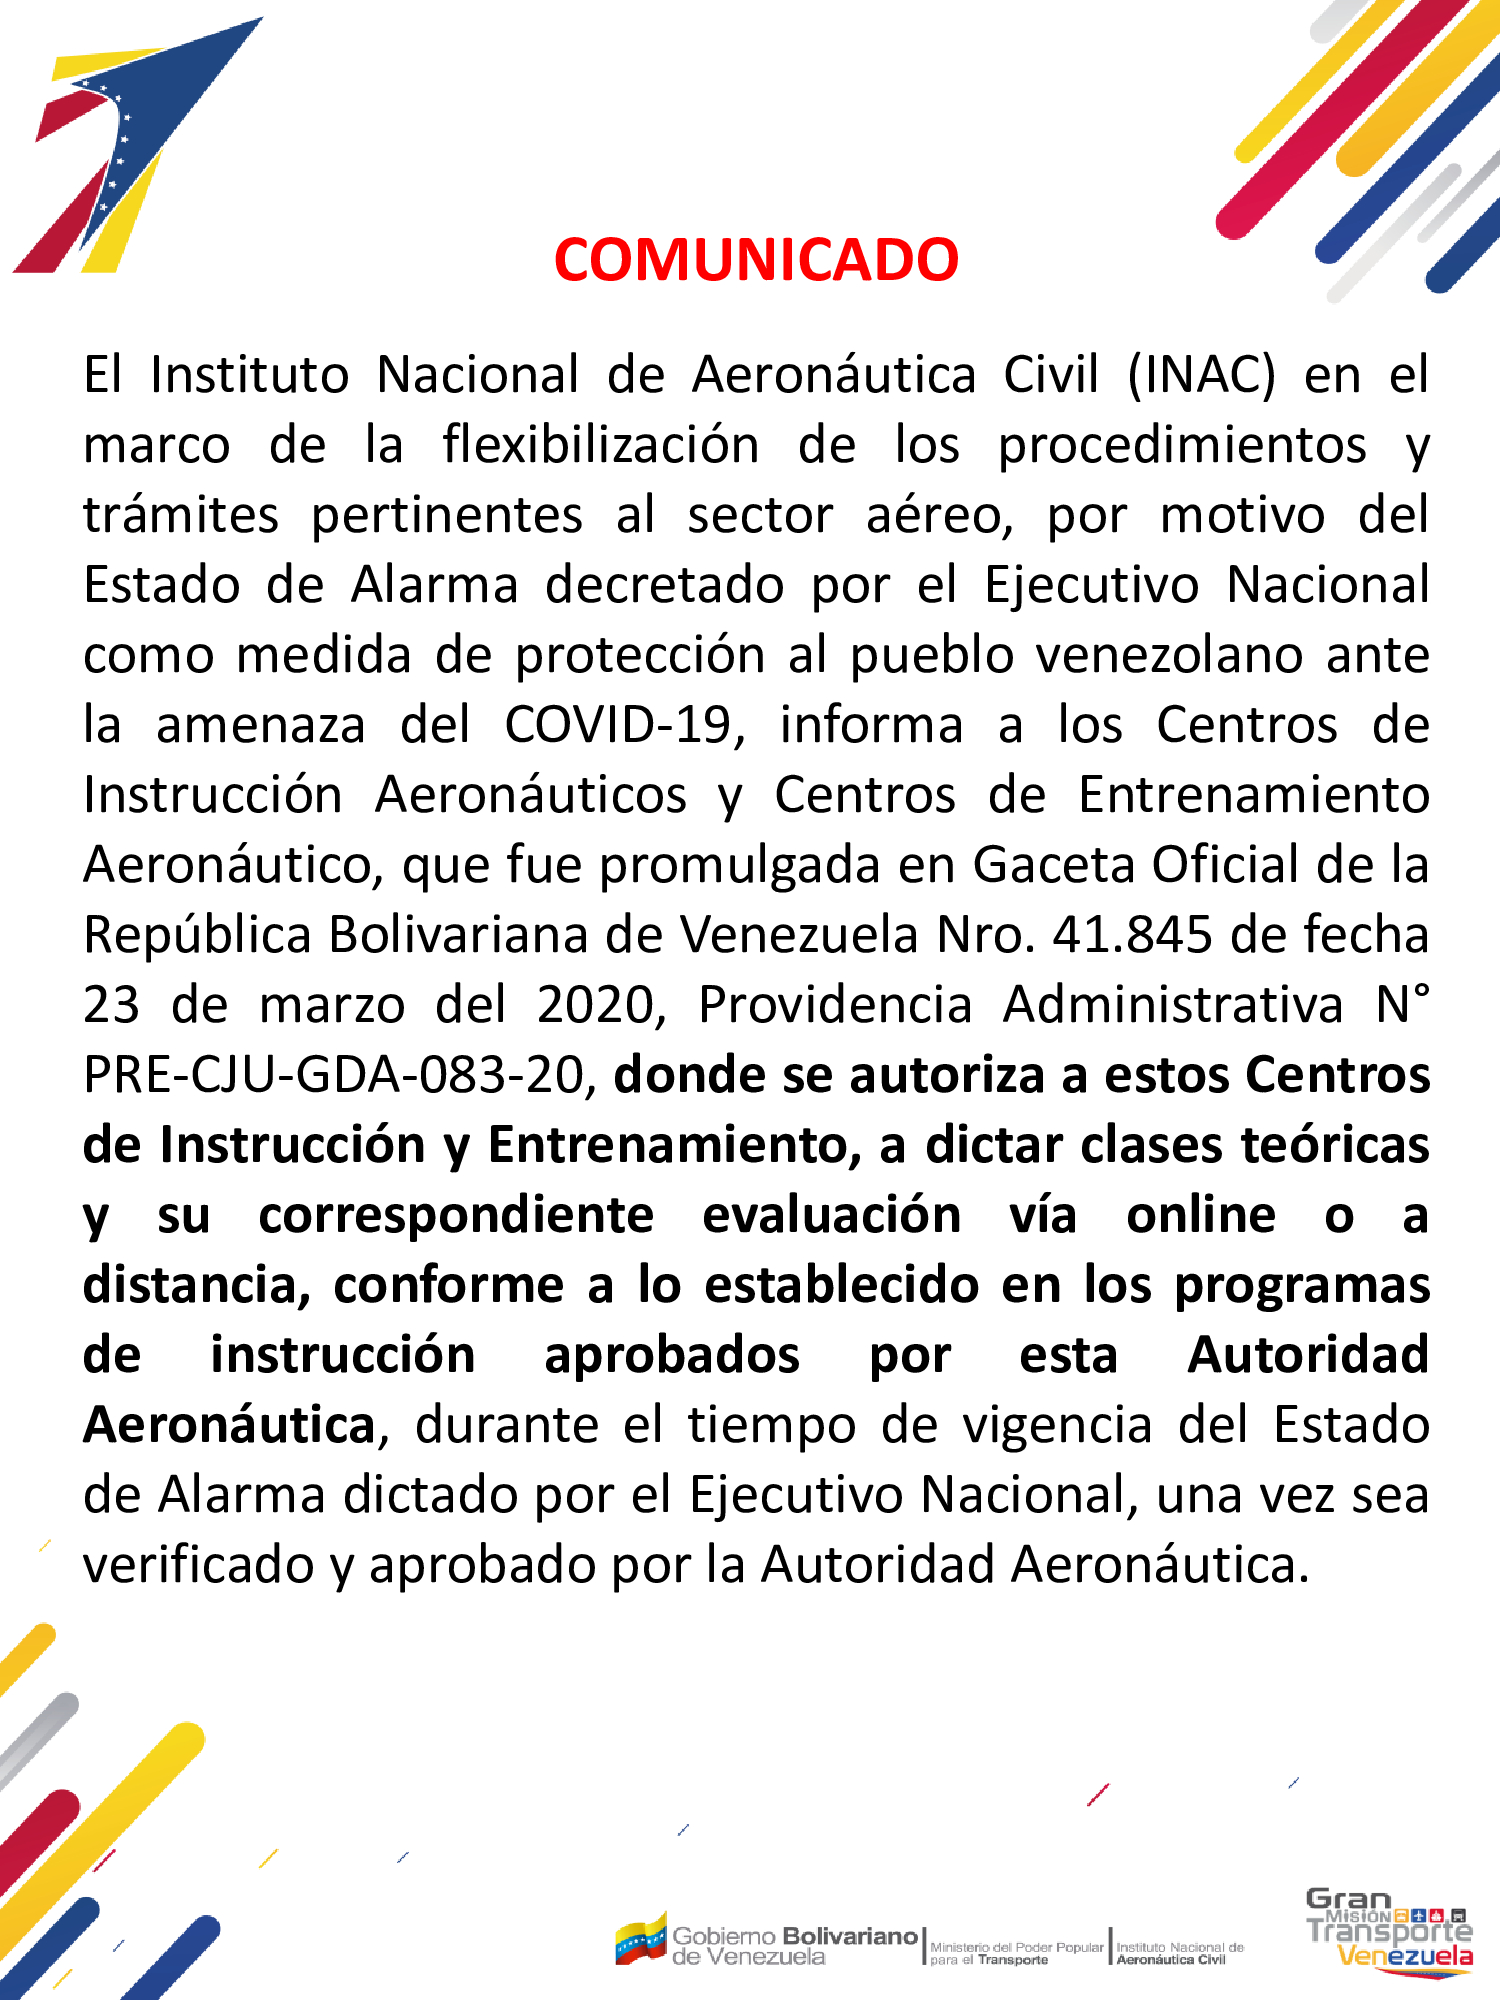 Providencia Administrativa N° PRE-CJU-GDA-083-20, Para los Centros de Instrucción Aeronáutica y Centros de Entrenamiento Aeronáutico